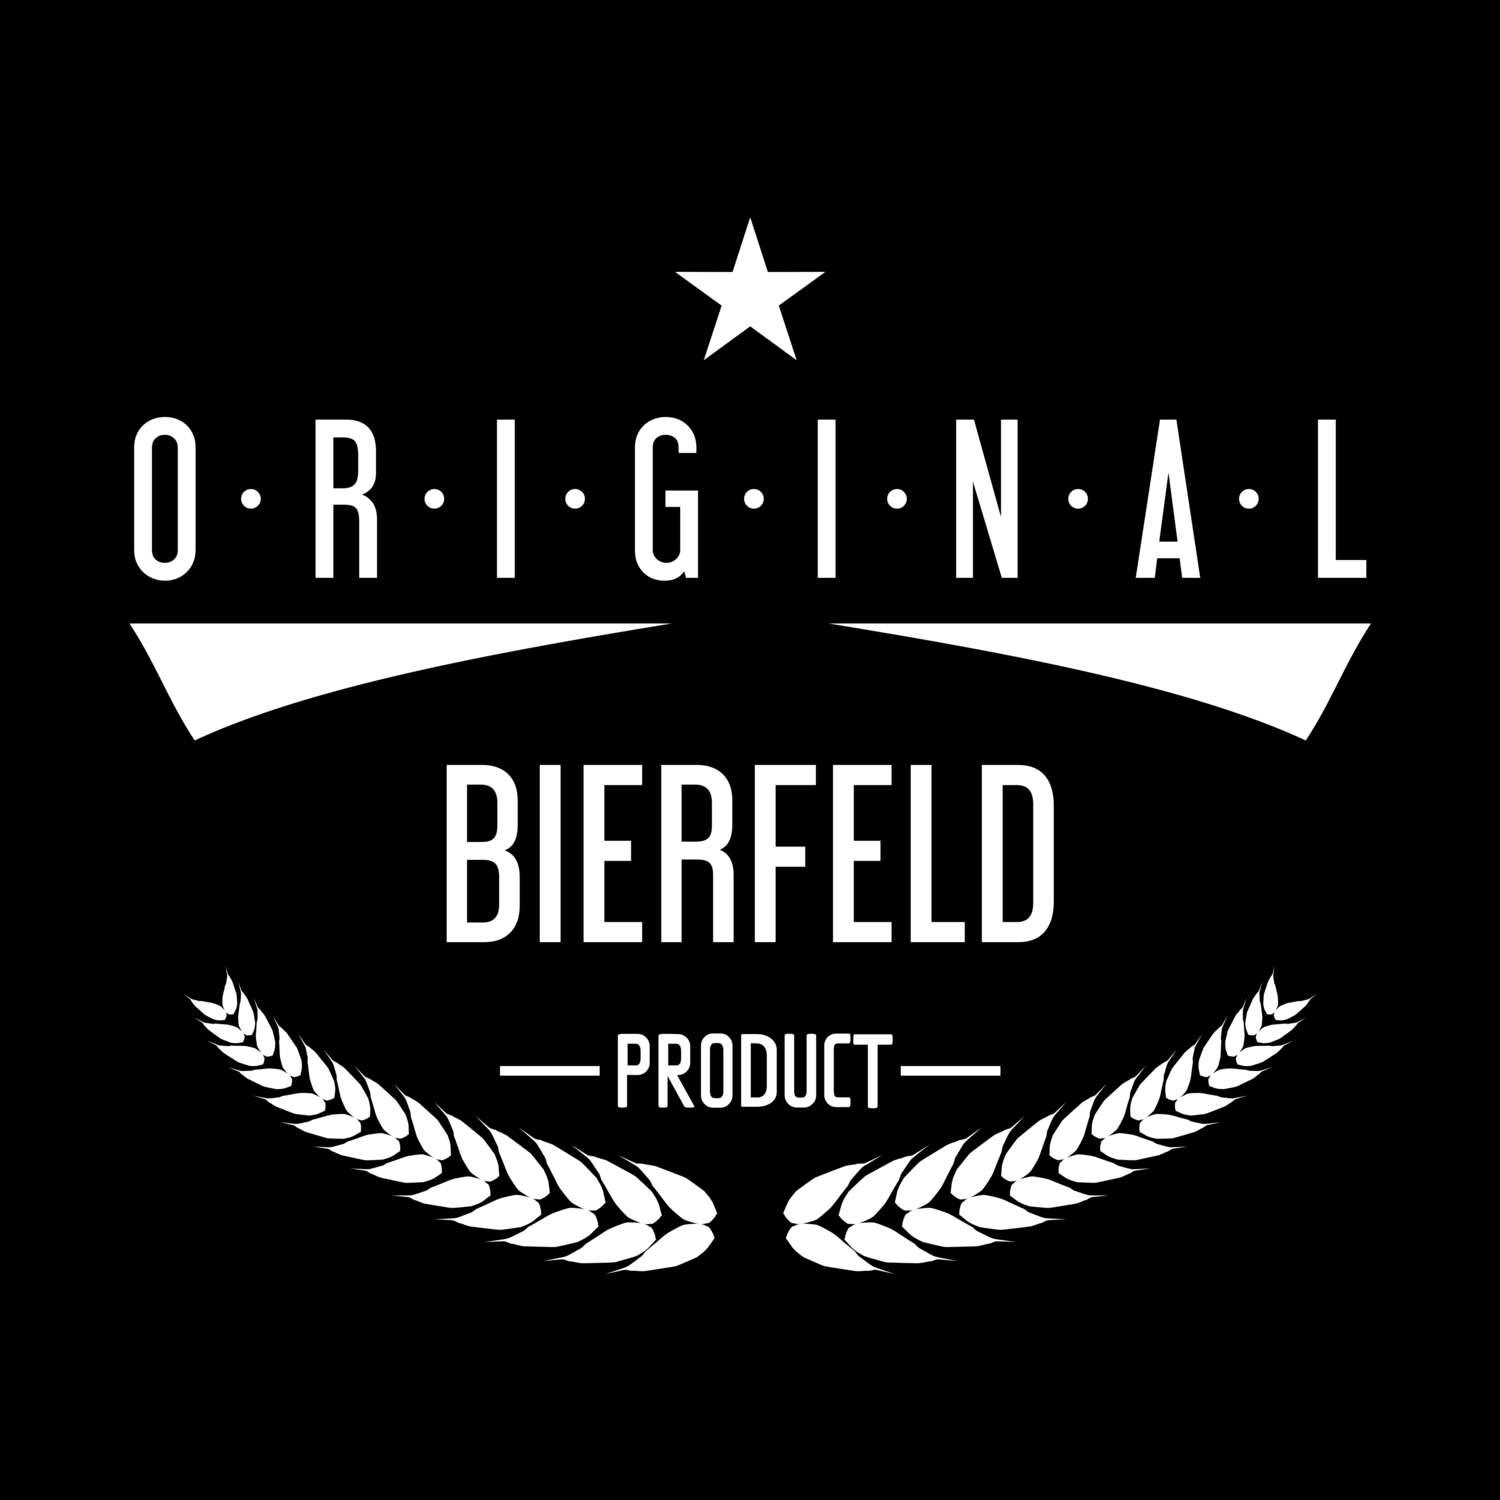 Bierfeld T-Shirt »Original Product«